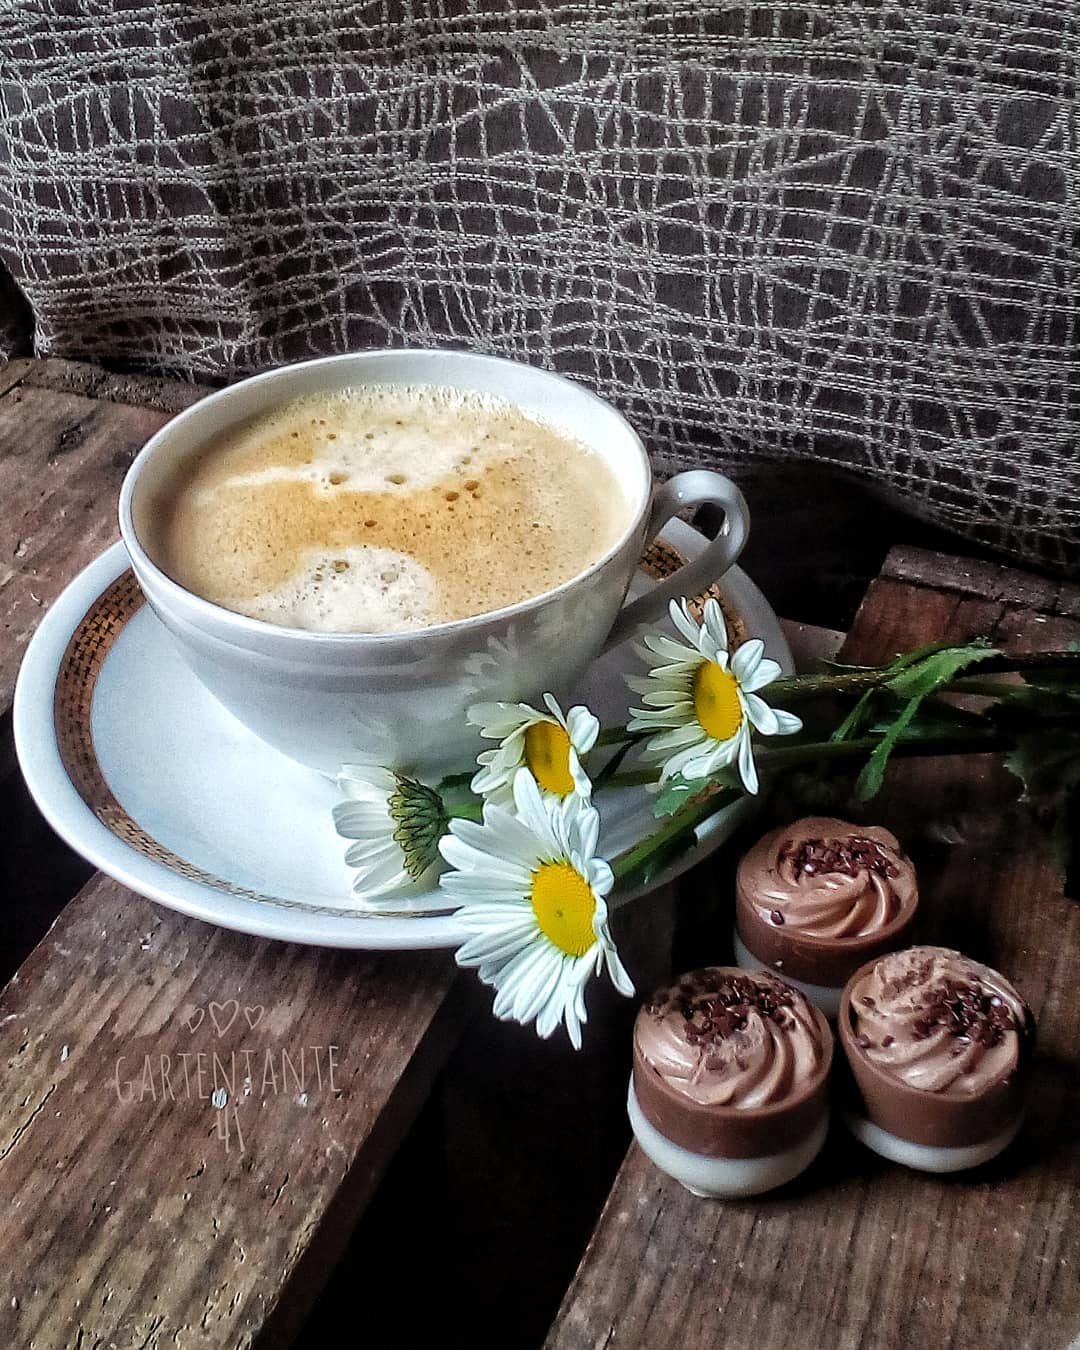 Чашка кофе с пеной на блюдце, рядом лежат ромашки и три шоколадных конфеты на деревянной поверхности.